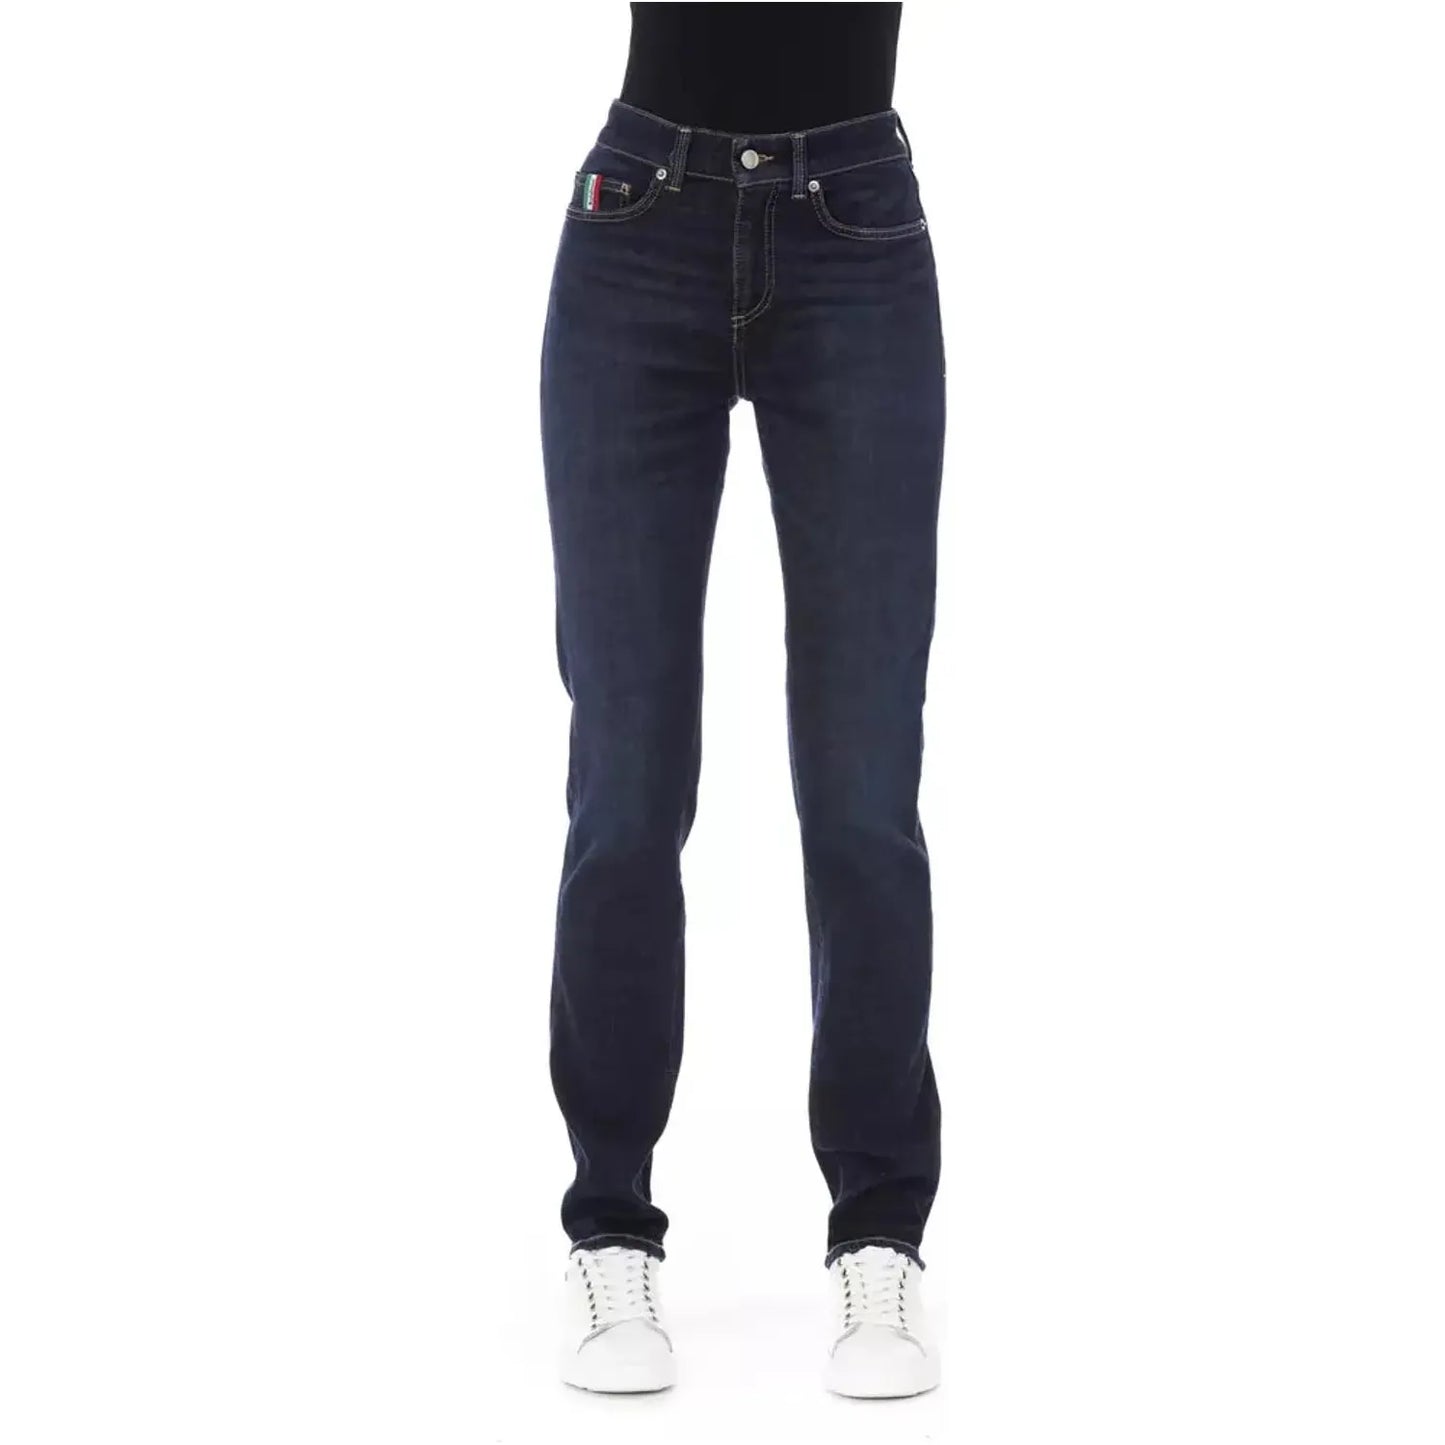 Baldinini Trend Chic Tricolor Pocket Designer Jeans blue-cotton-jeans-pant-148